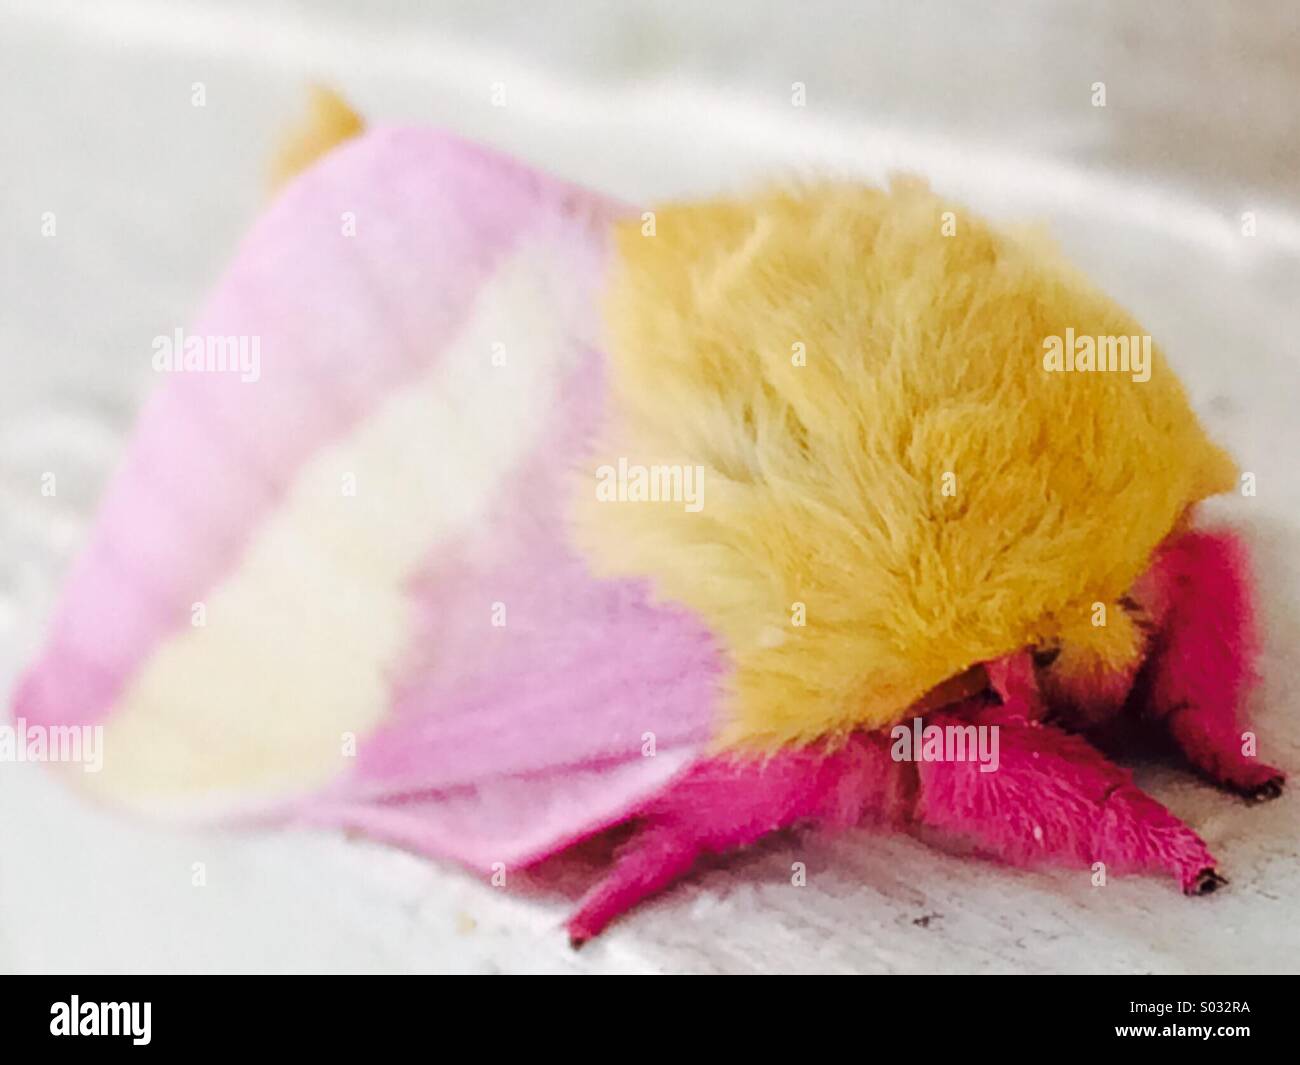 L Erable Dryocampa Rubicunda Papillon Rose Avec Un Corps Jaune Et Rose Et Jaune Des Ailes Photo Stock Alamy